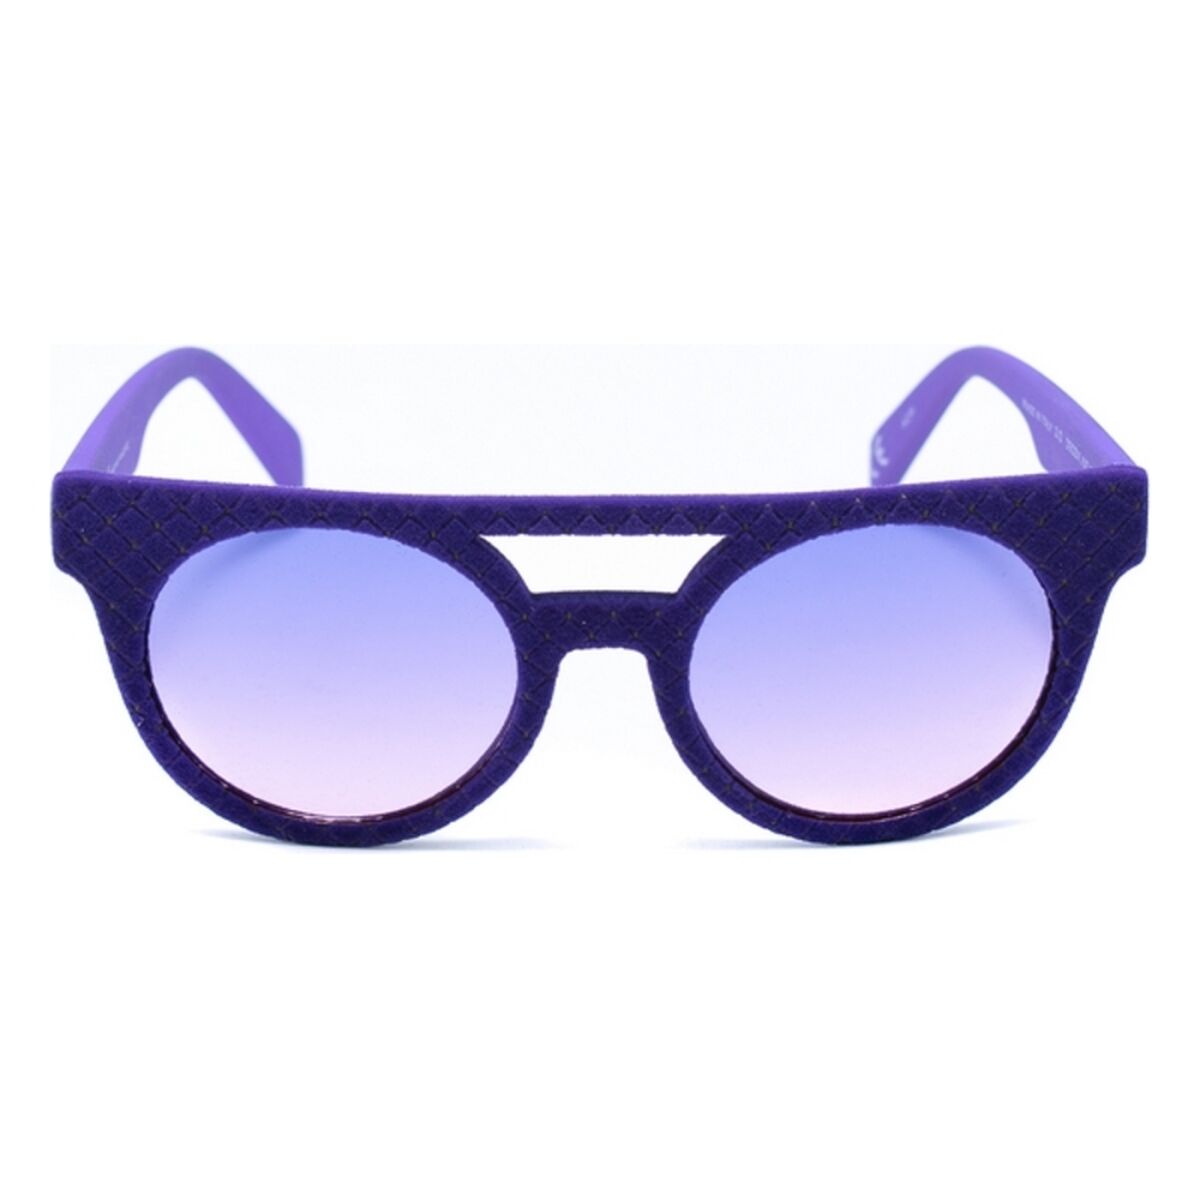 Unisex Sunglasses Italia Independent 0903VI-IND-017 (50 mm) Purple (ø 50 mm)